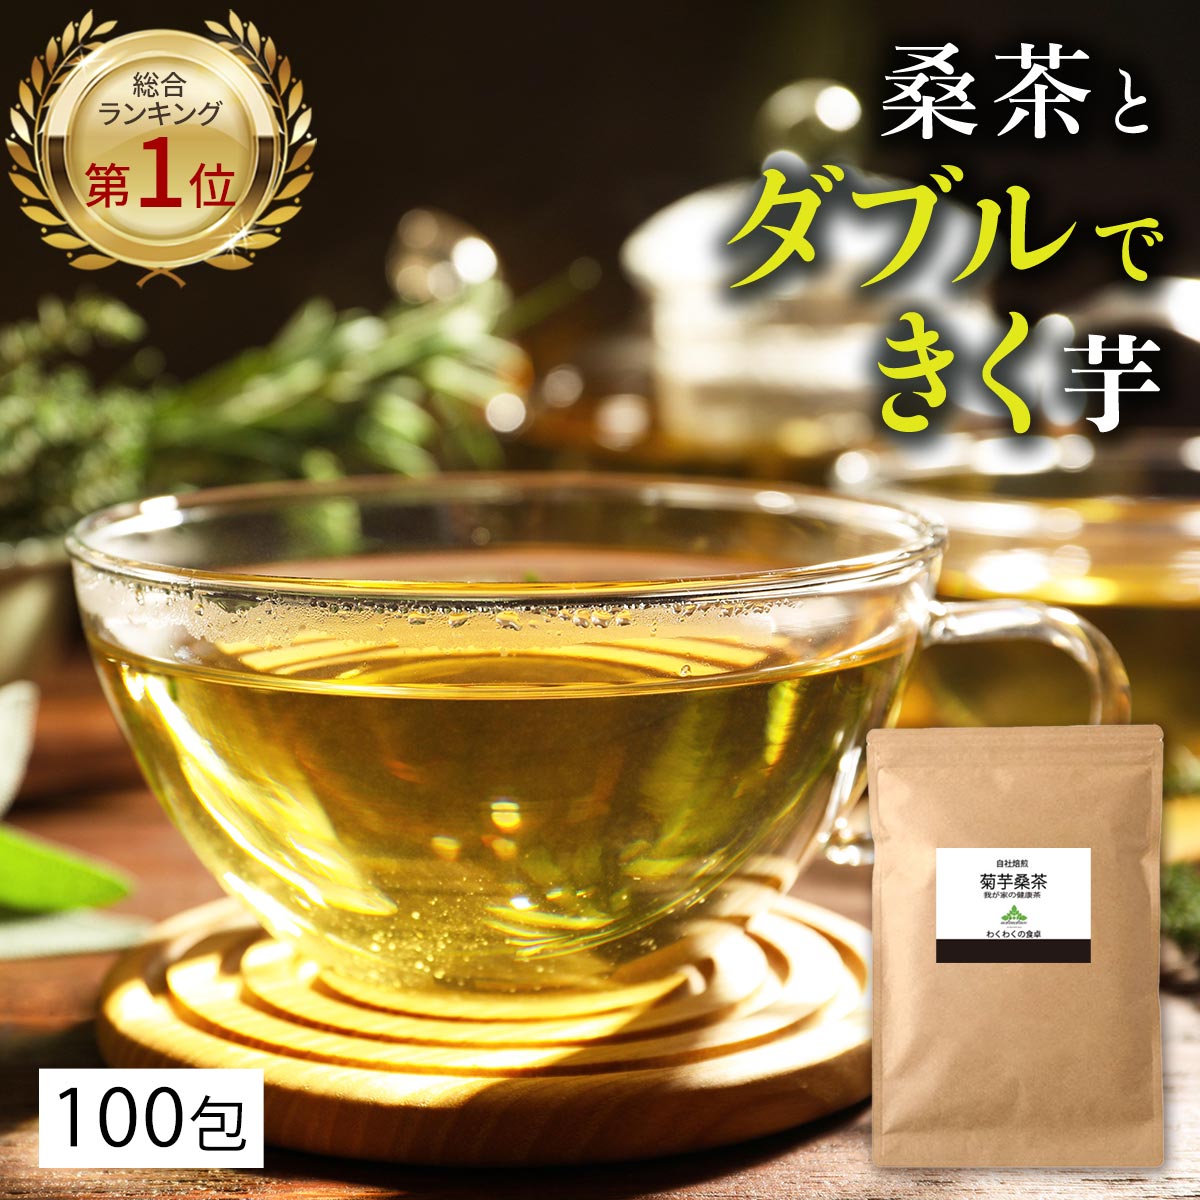 ● 国産 ごぼう茶 1.5g x 20p（ 30g ティーバッグ ） ほんぢ園 ＜ ゴボウ茶 ごぼう茶 ダイエット ノンカフェイン ＞ 送料無料 ／セ／